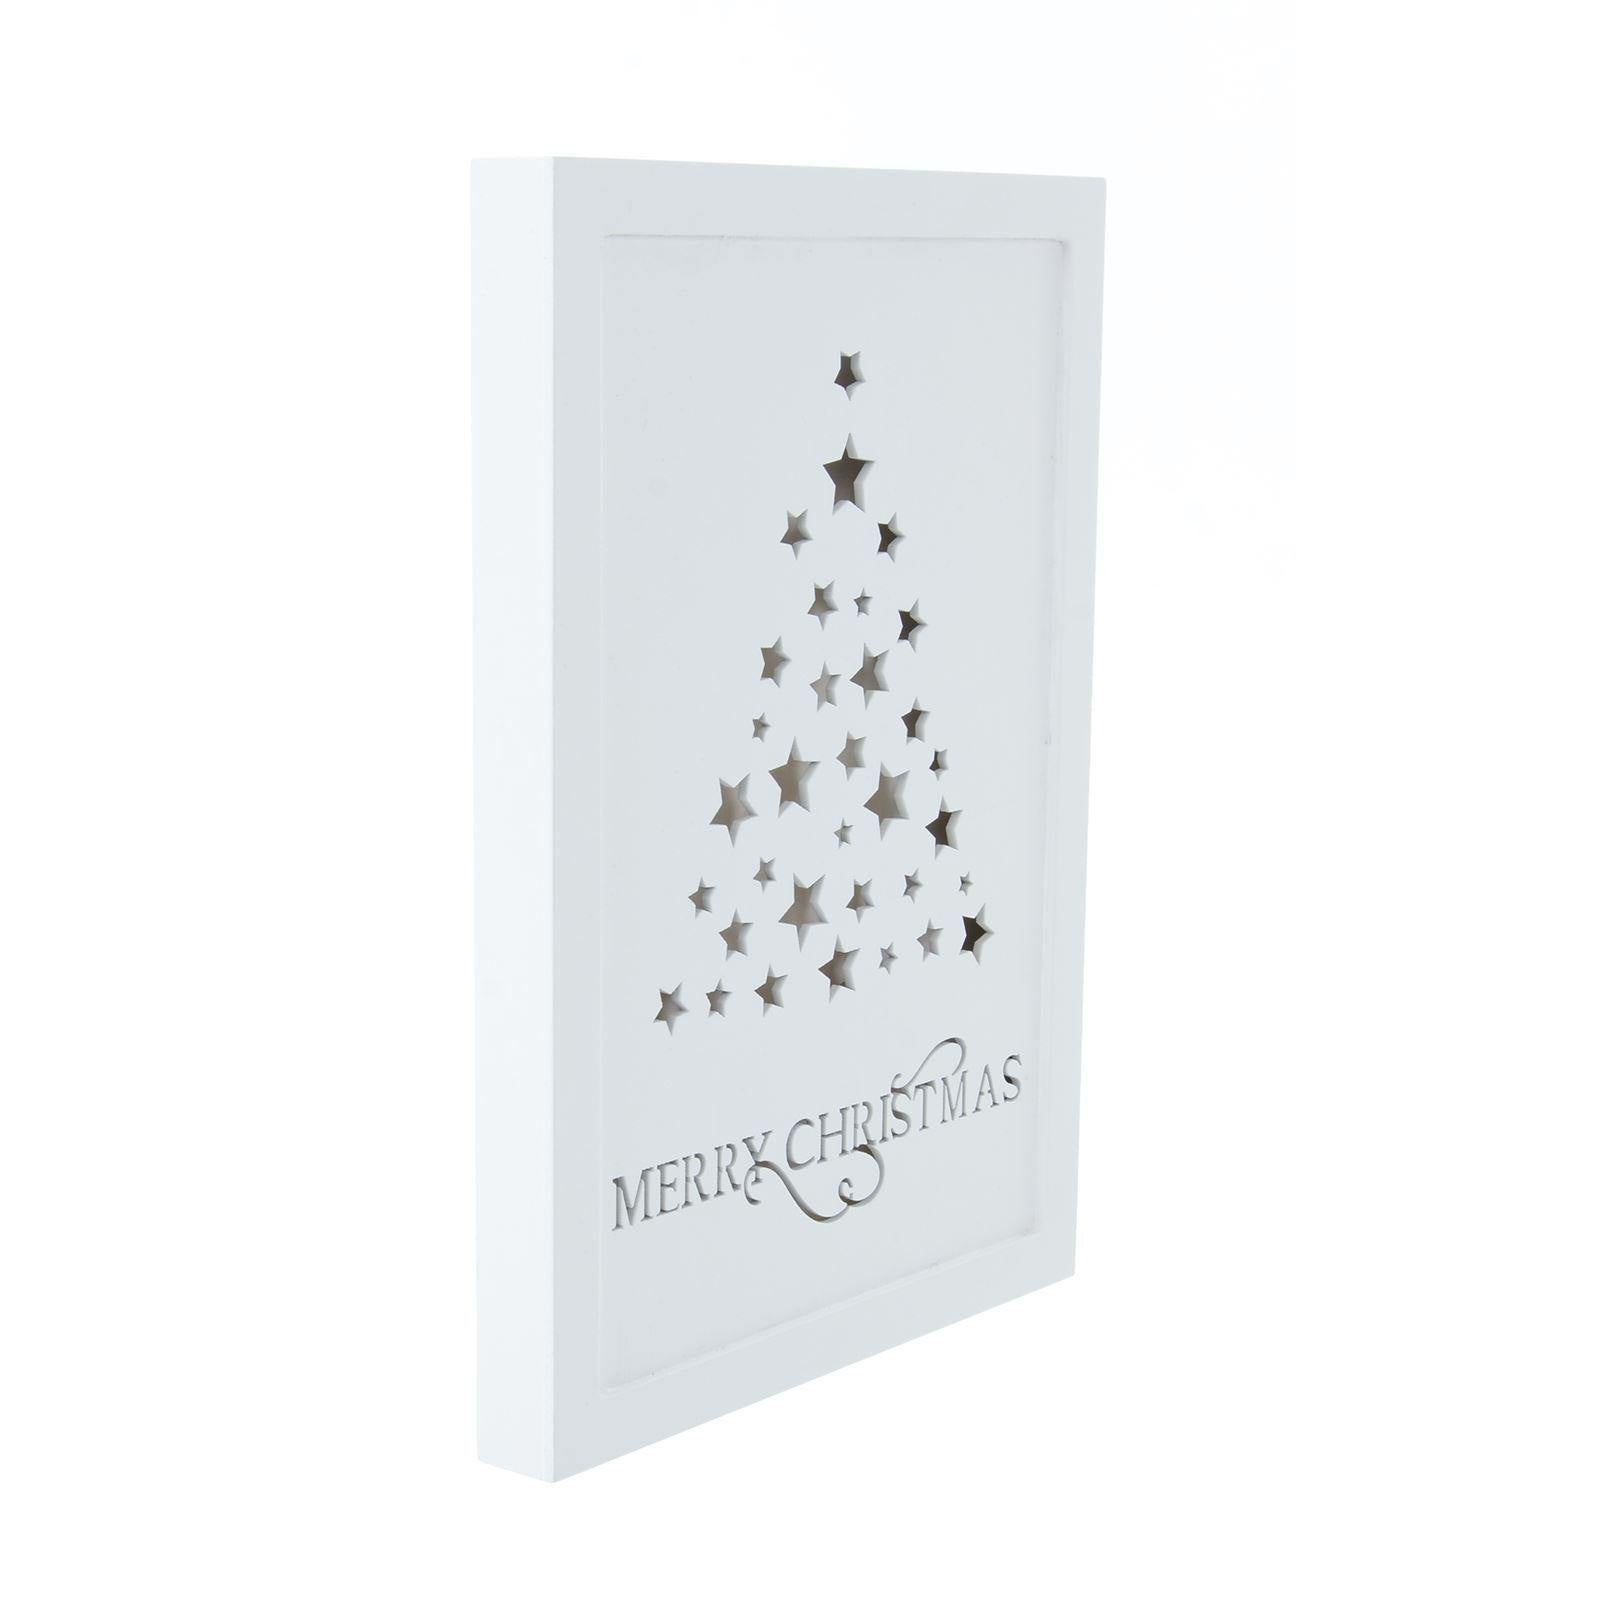 Mr Crimbo 11" Light Up White Wall Plaque Christmas Decoration - MrCrimbo.co.uk -XS5075 - Wreath Design -decorations